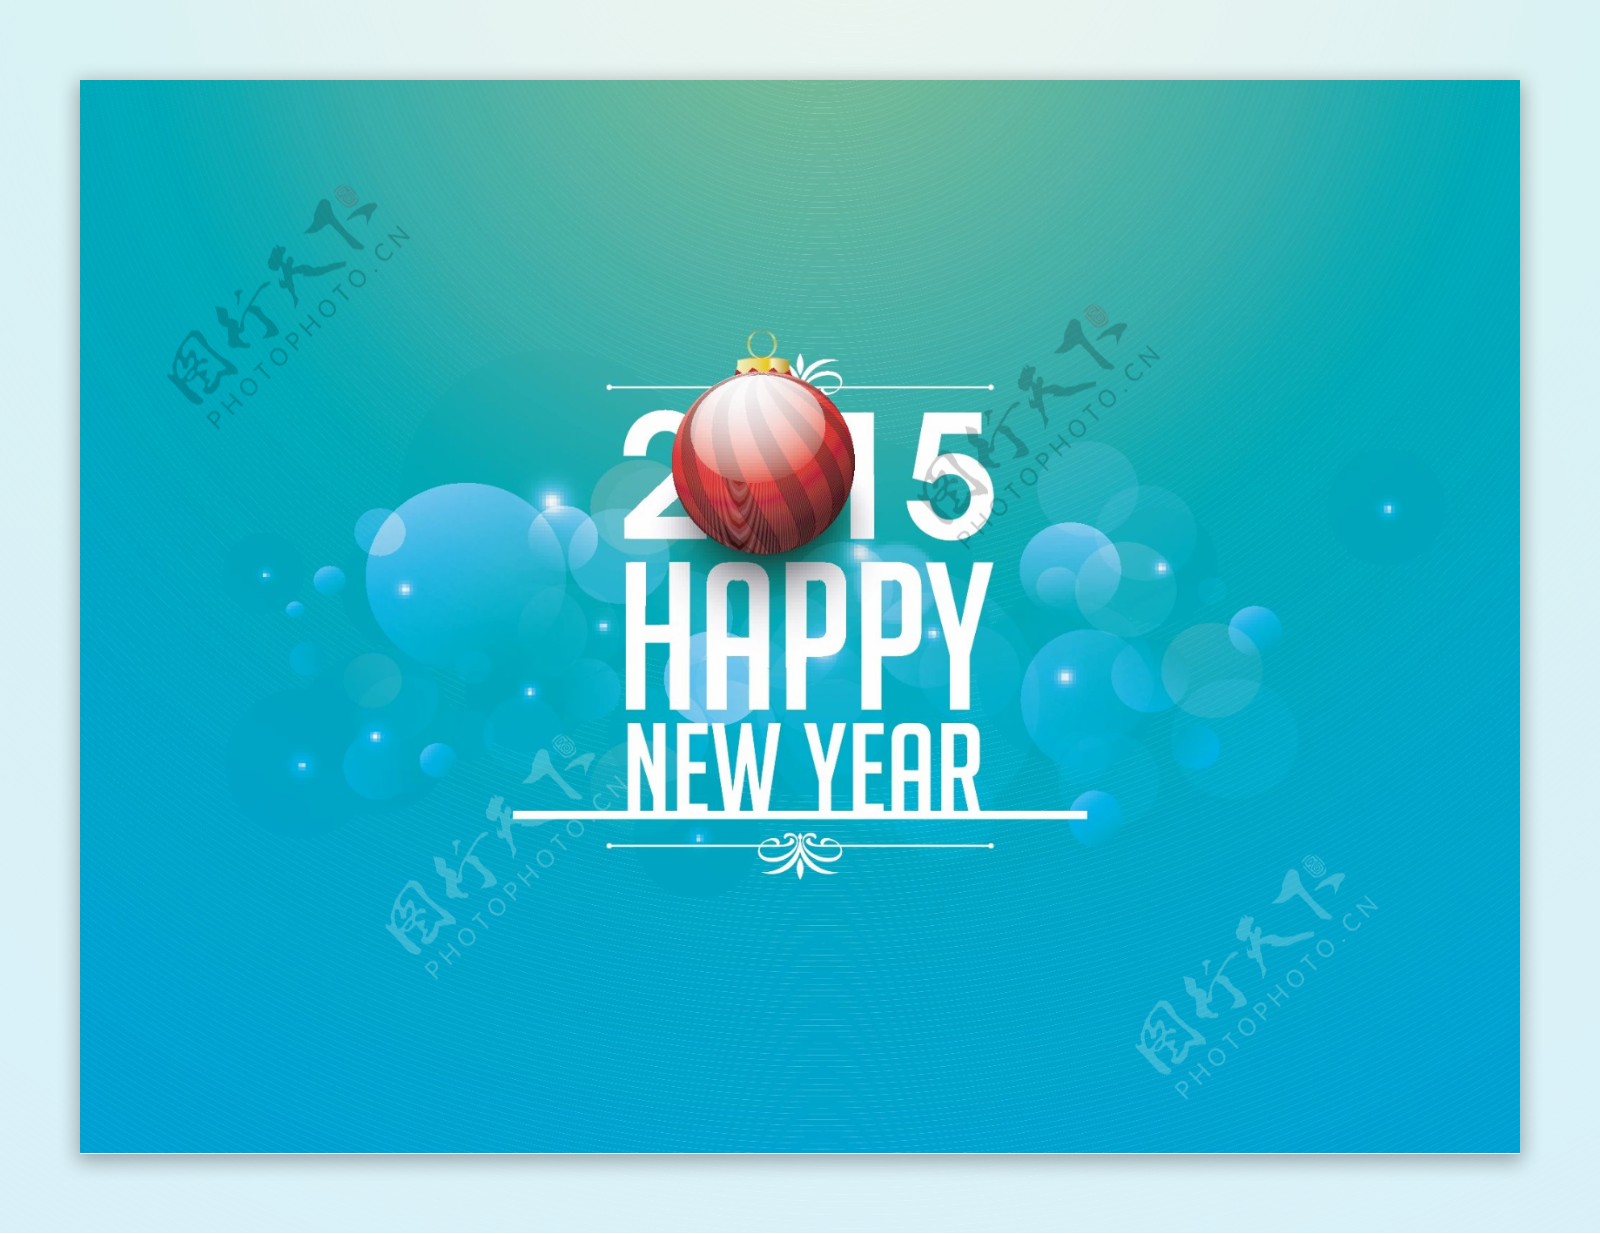 2015年新年快乐背景矢量素材